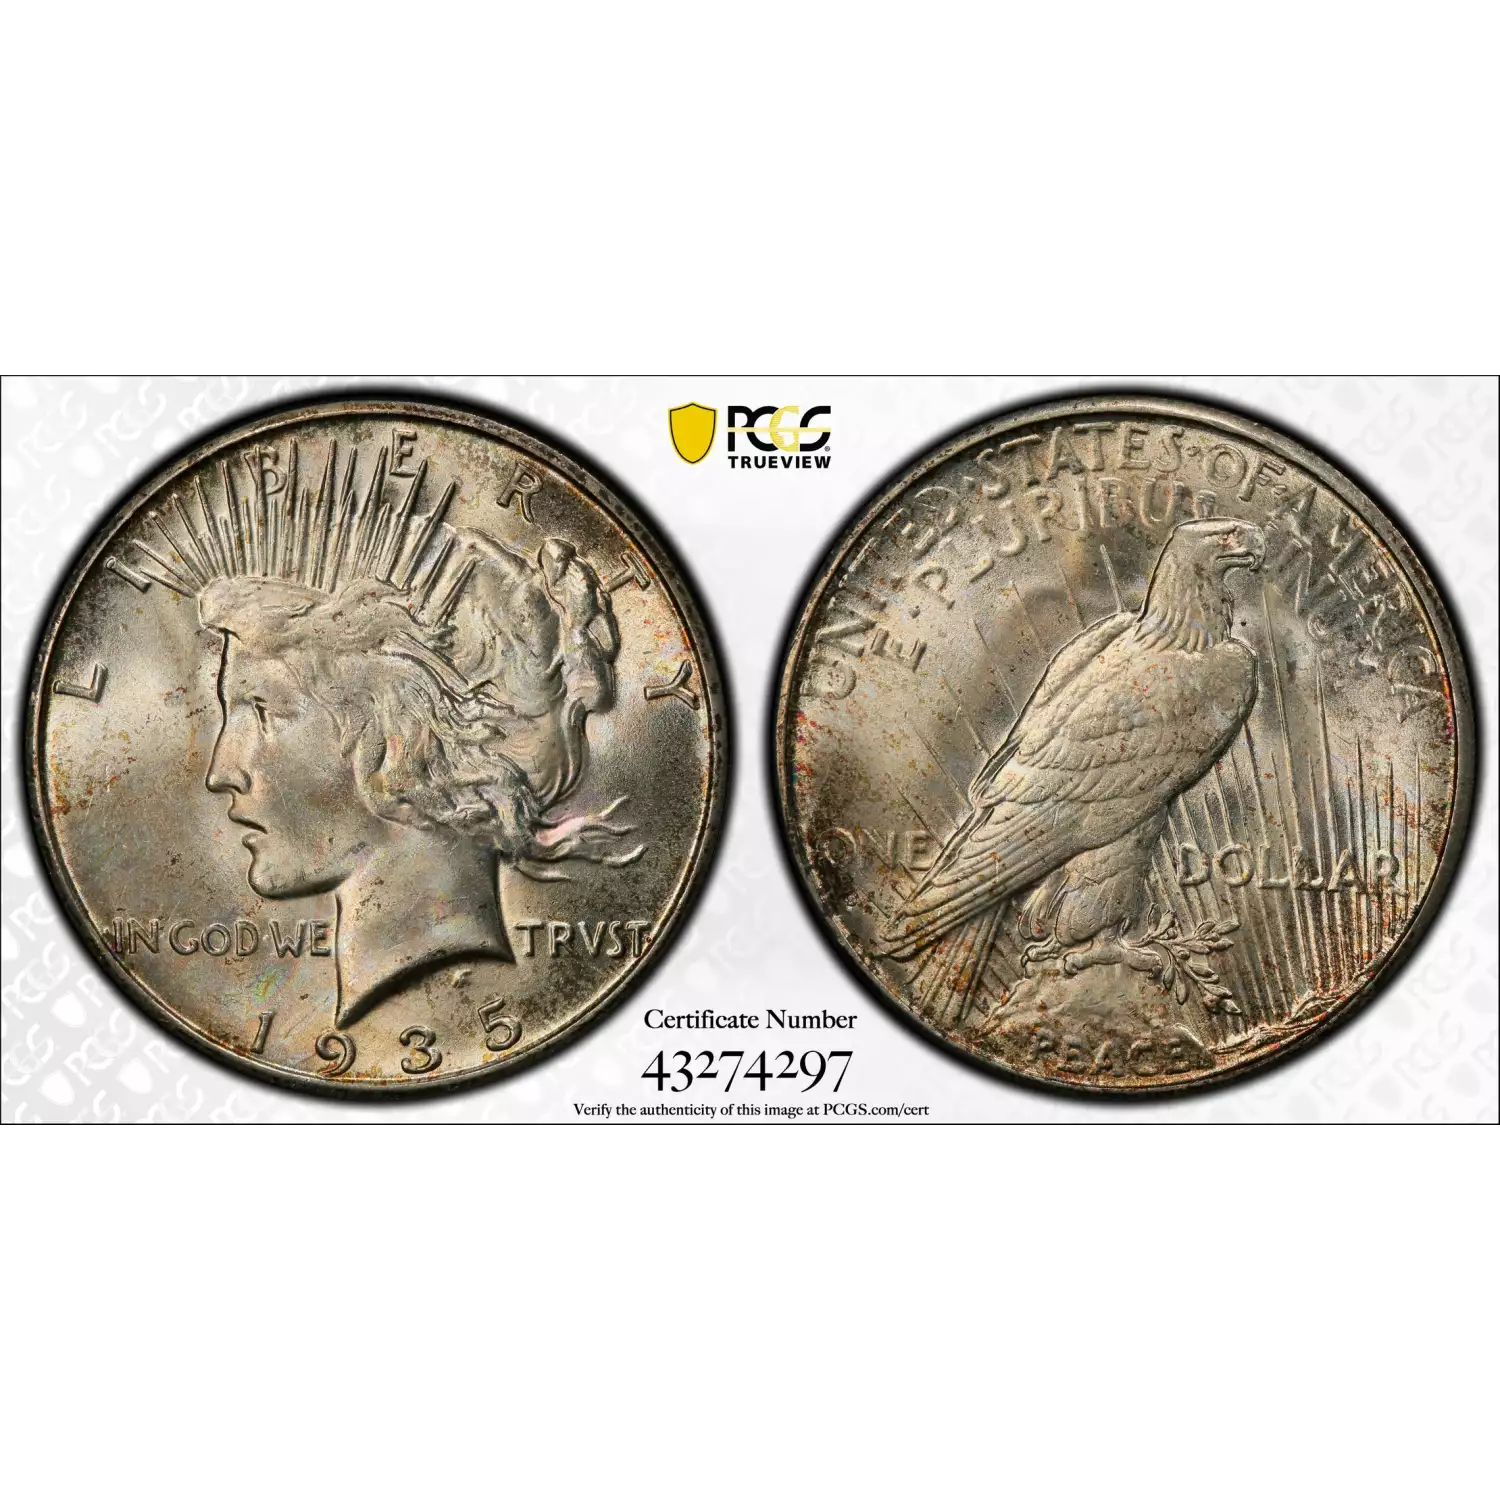 1935-S $1